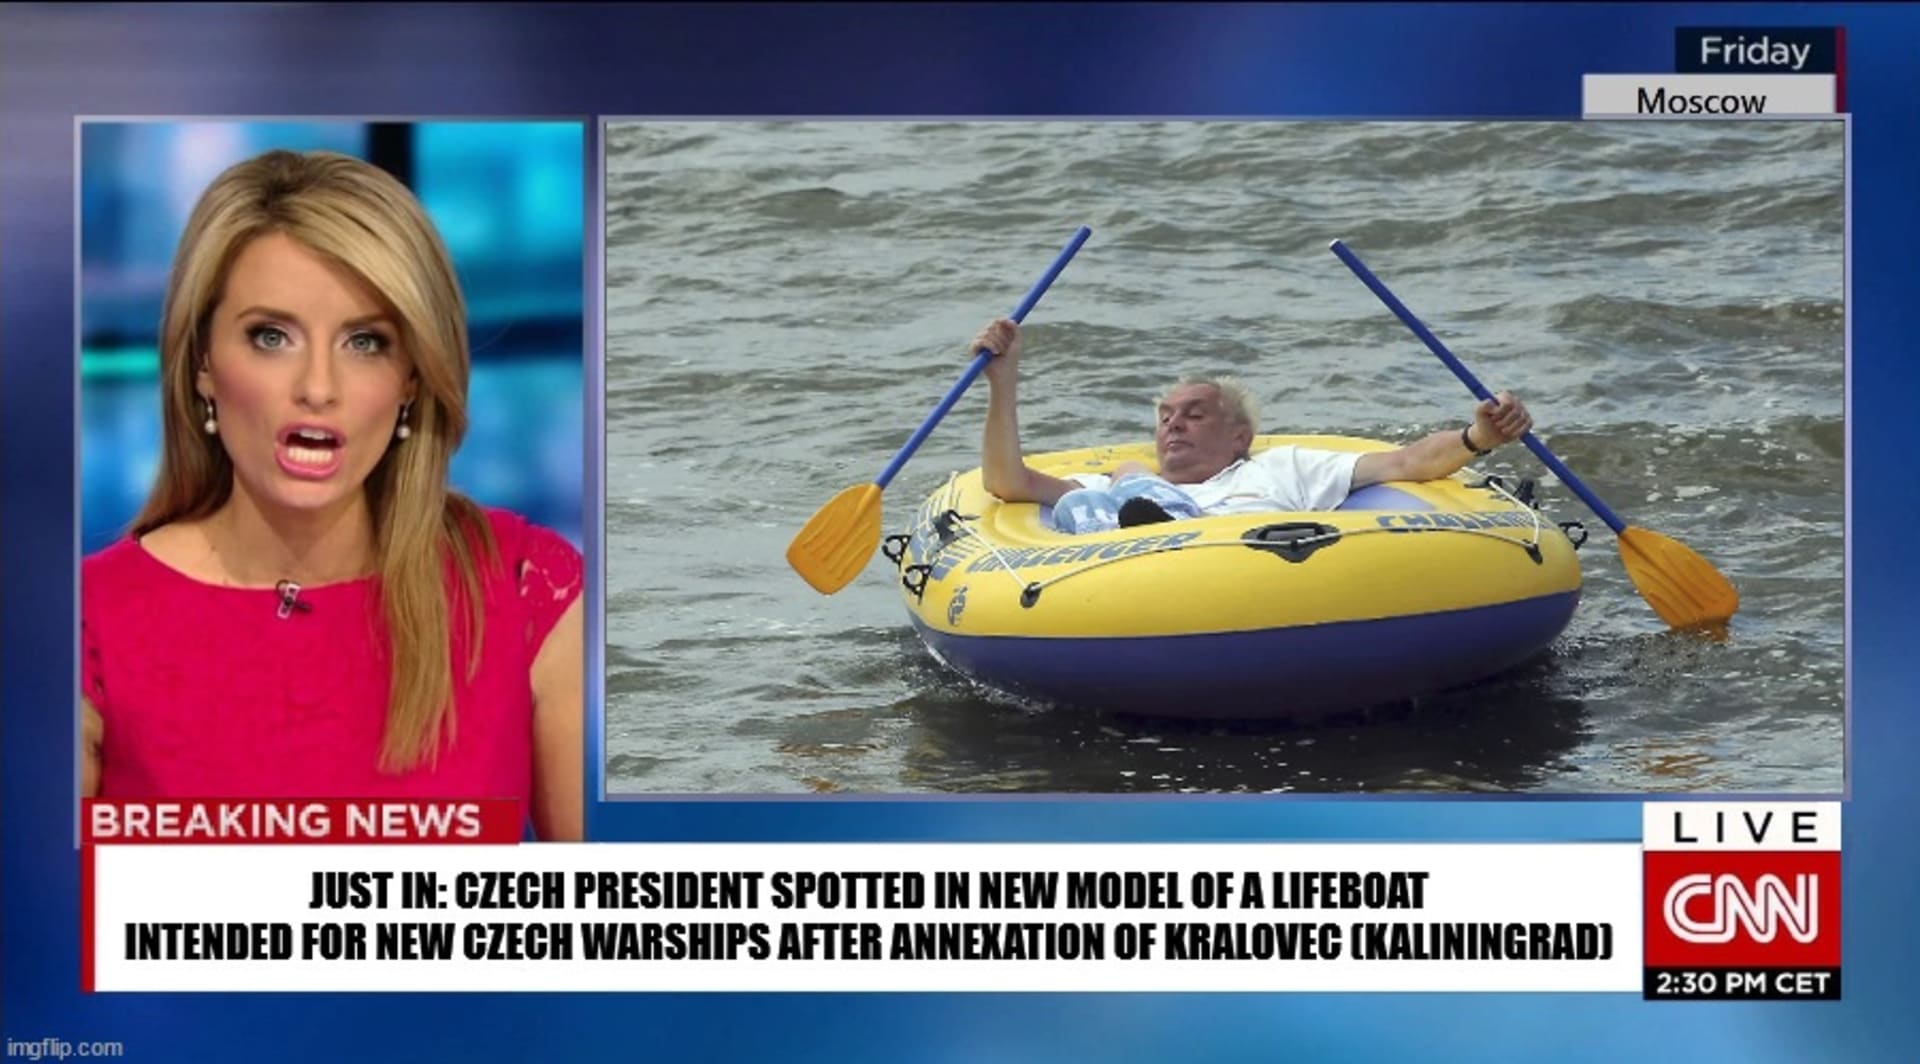 Mezi vtipnými kolážemi nemůže chybět ani prezident Miloš Zeman. Česká hlava státu má v oblibě každý rok vyrazit na jezero v dnes už ikonickém žlutém člunu Challenger. Že by šlo o nový model záchranných člunů pro českou flotilu kotvící v Královci?